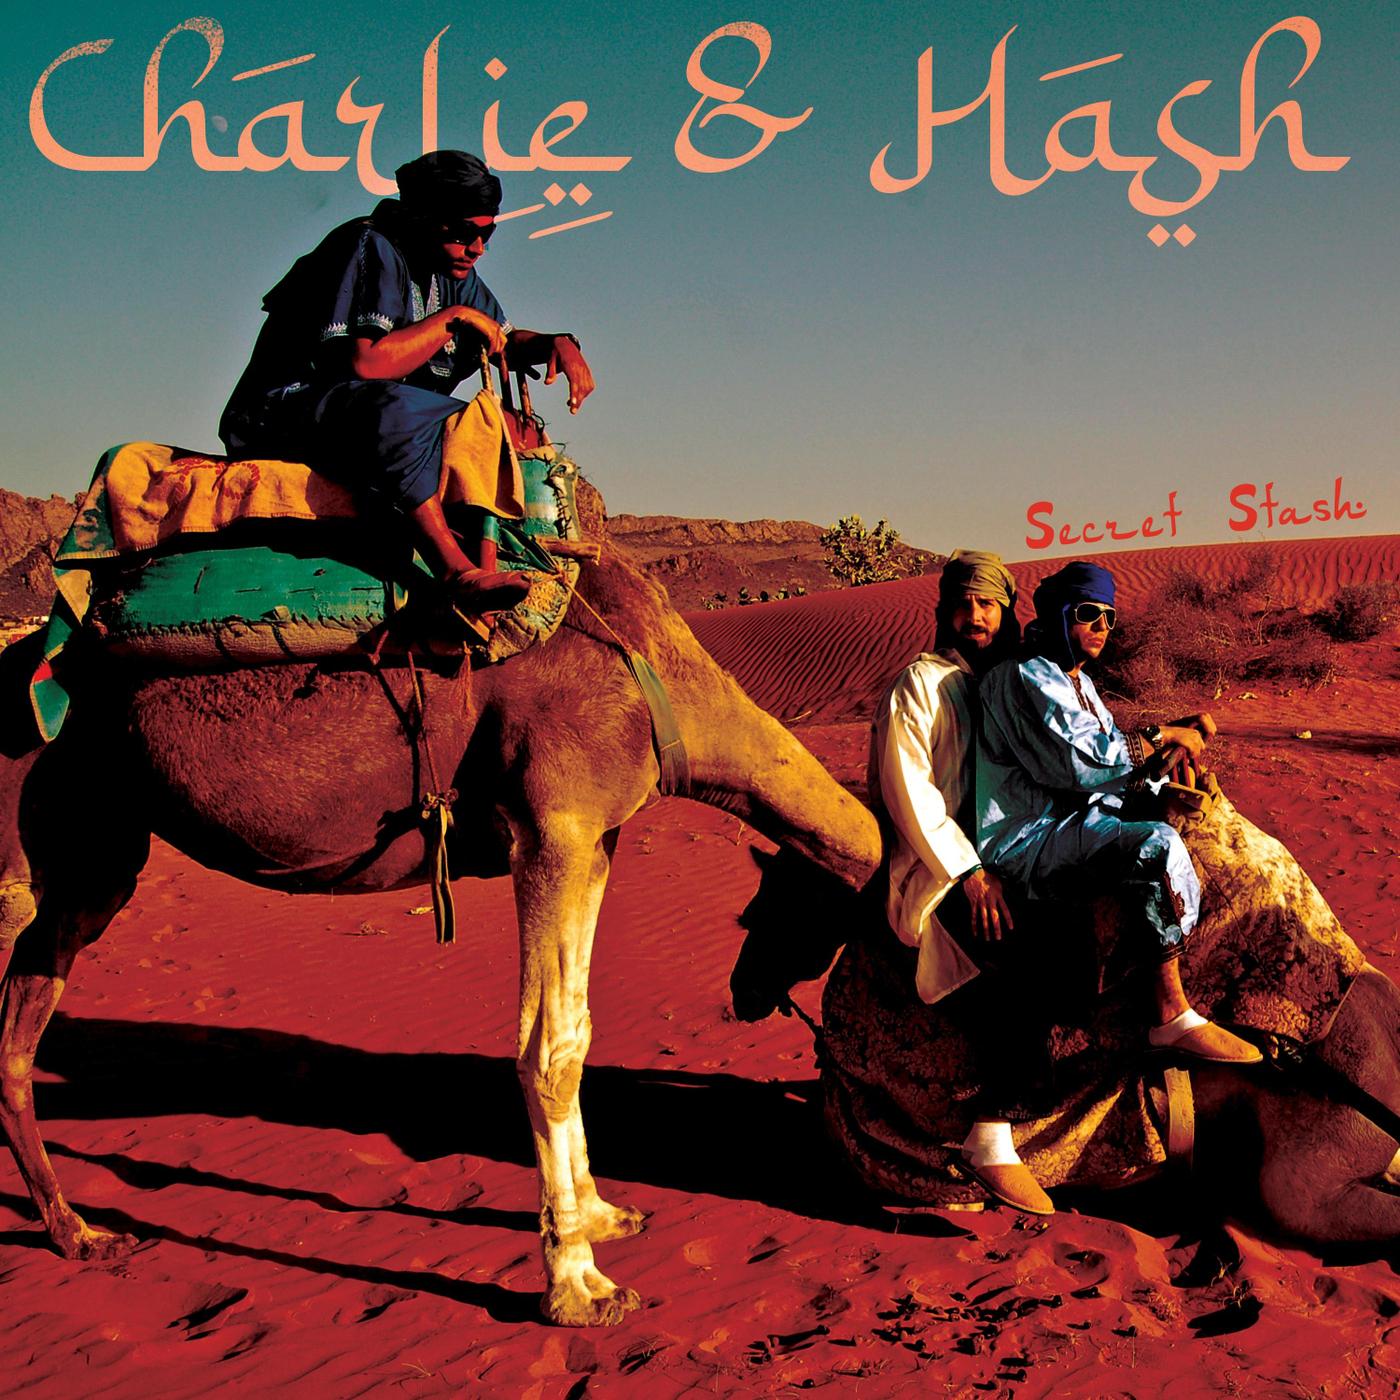 Charlie and Hash - Hoy Voy a Chupar (feat. Rasta Lloyd)